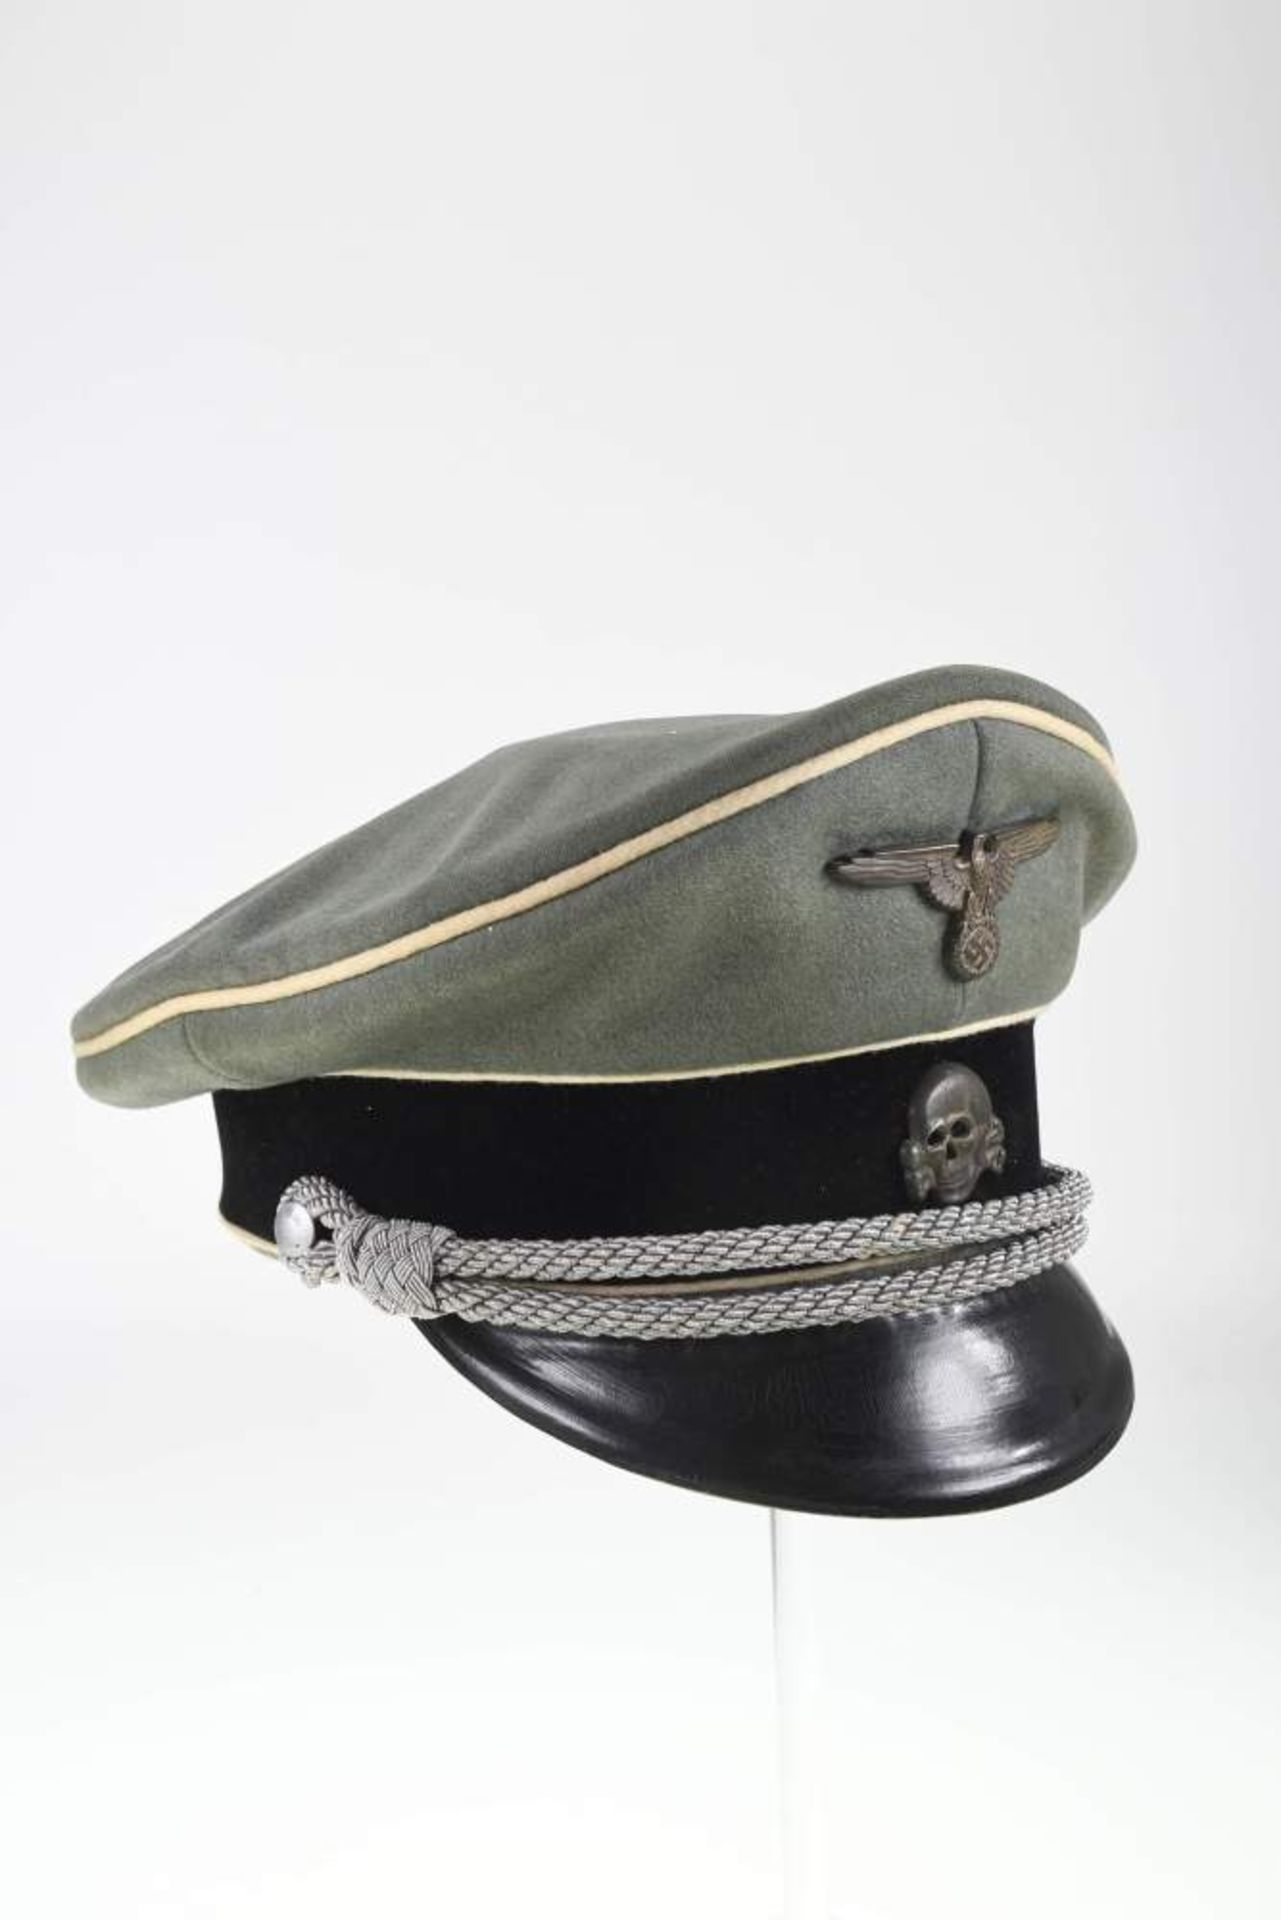 Waffen SS, Schirmmütze für Führer, feldgraues feines Tuch, mit schwarzem Samtbesatzstreifen und - Bild 3 aus 4